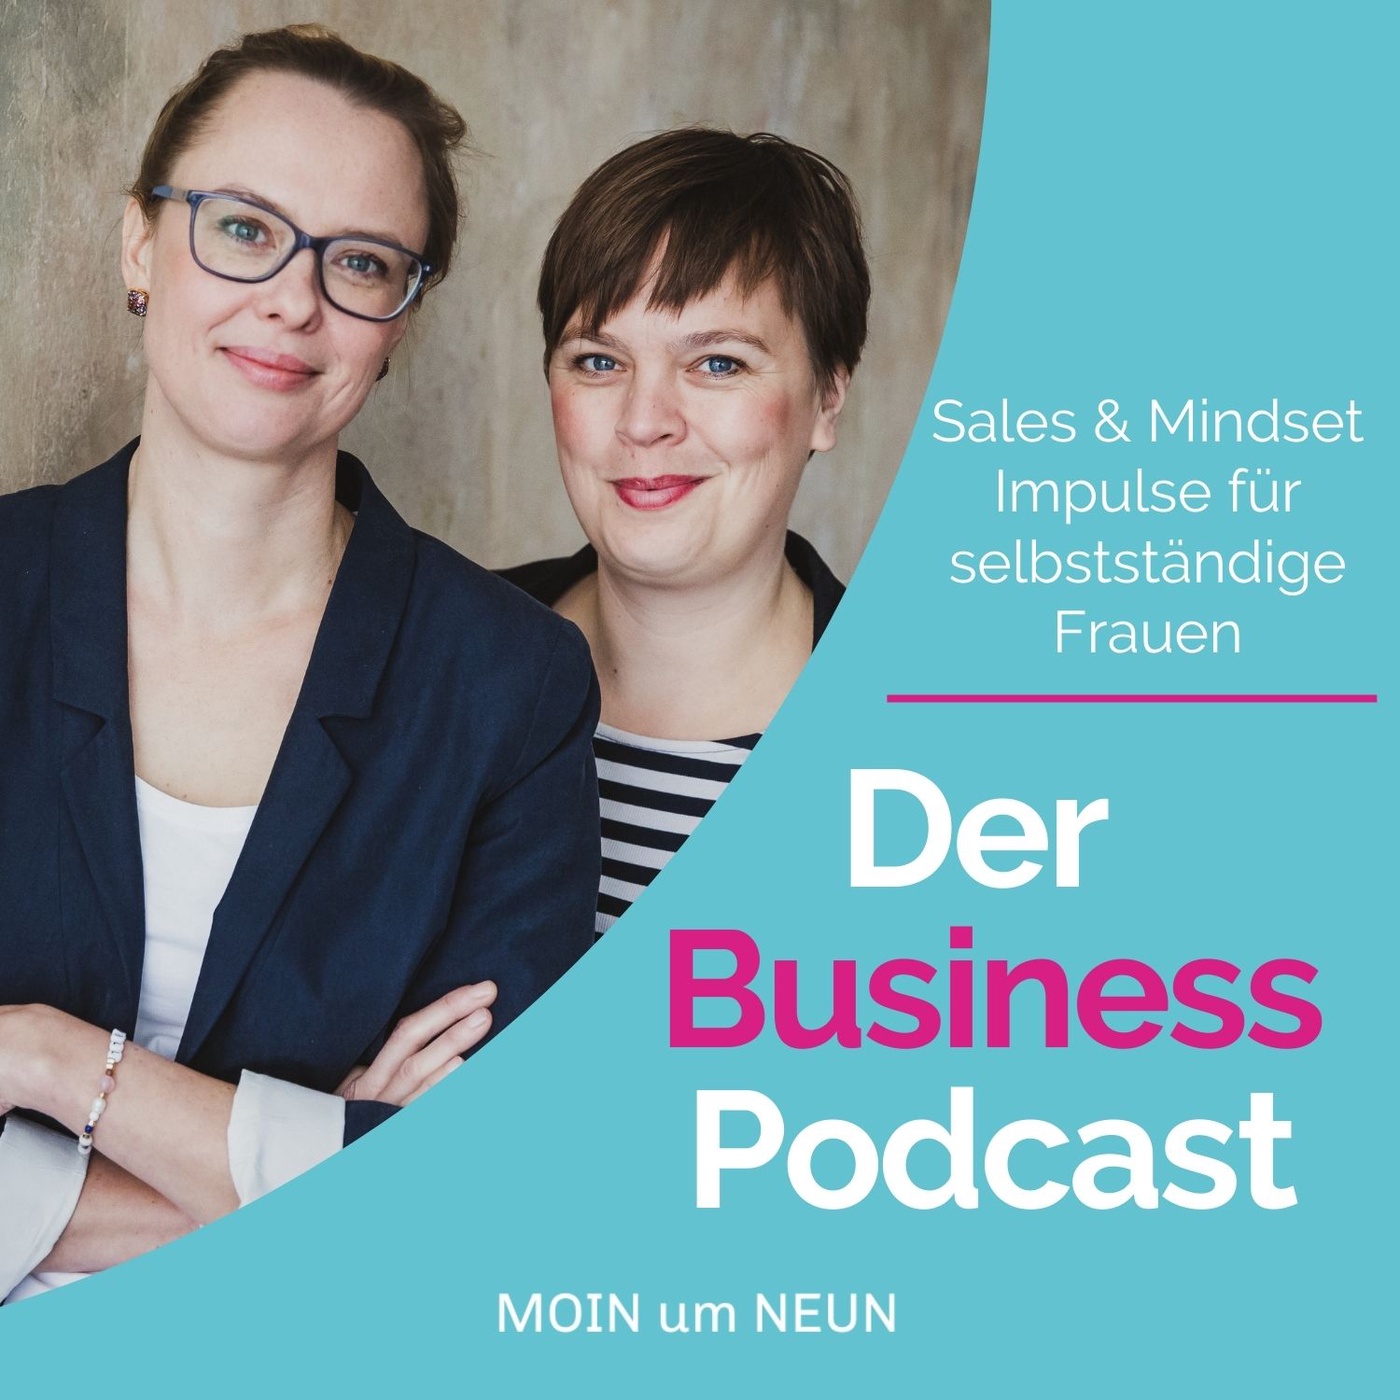 Der Business Podcast - Sales & Mindset Impulse für selbstständige Frauen